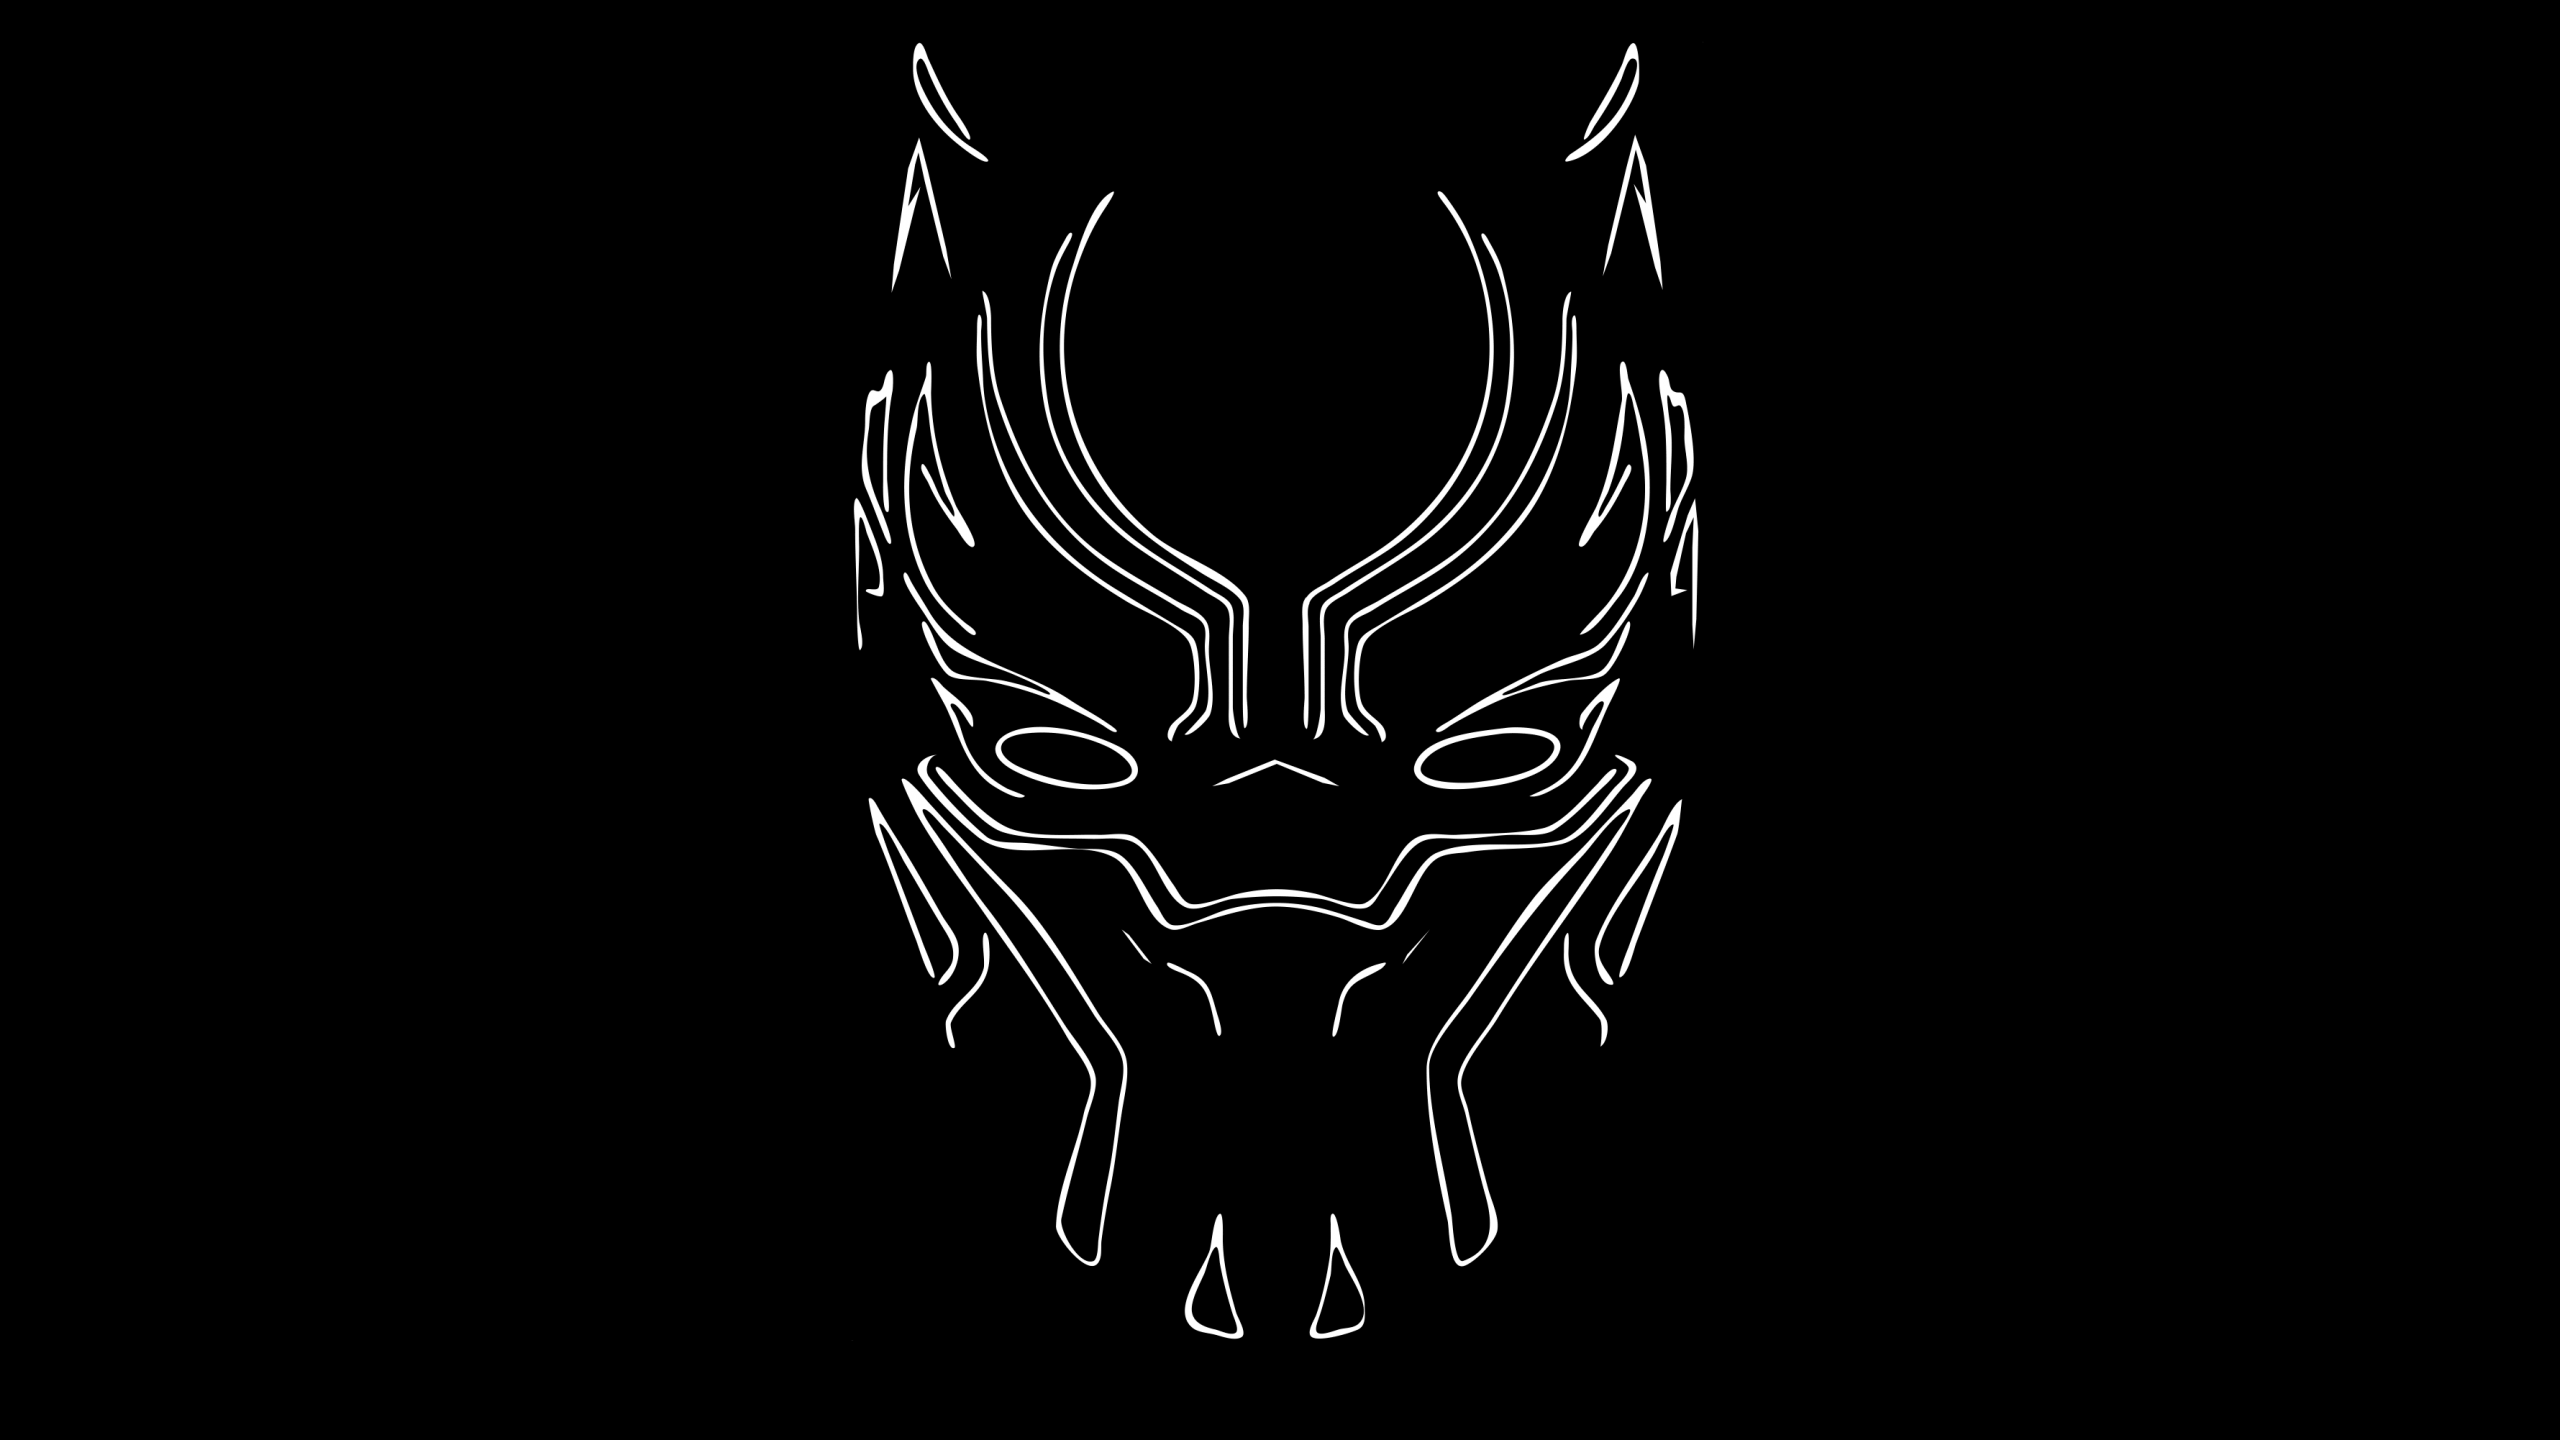 Black Panther Minimal Mask Wallpapers